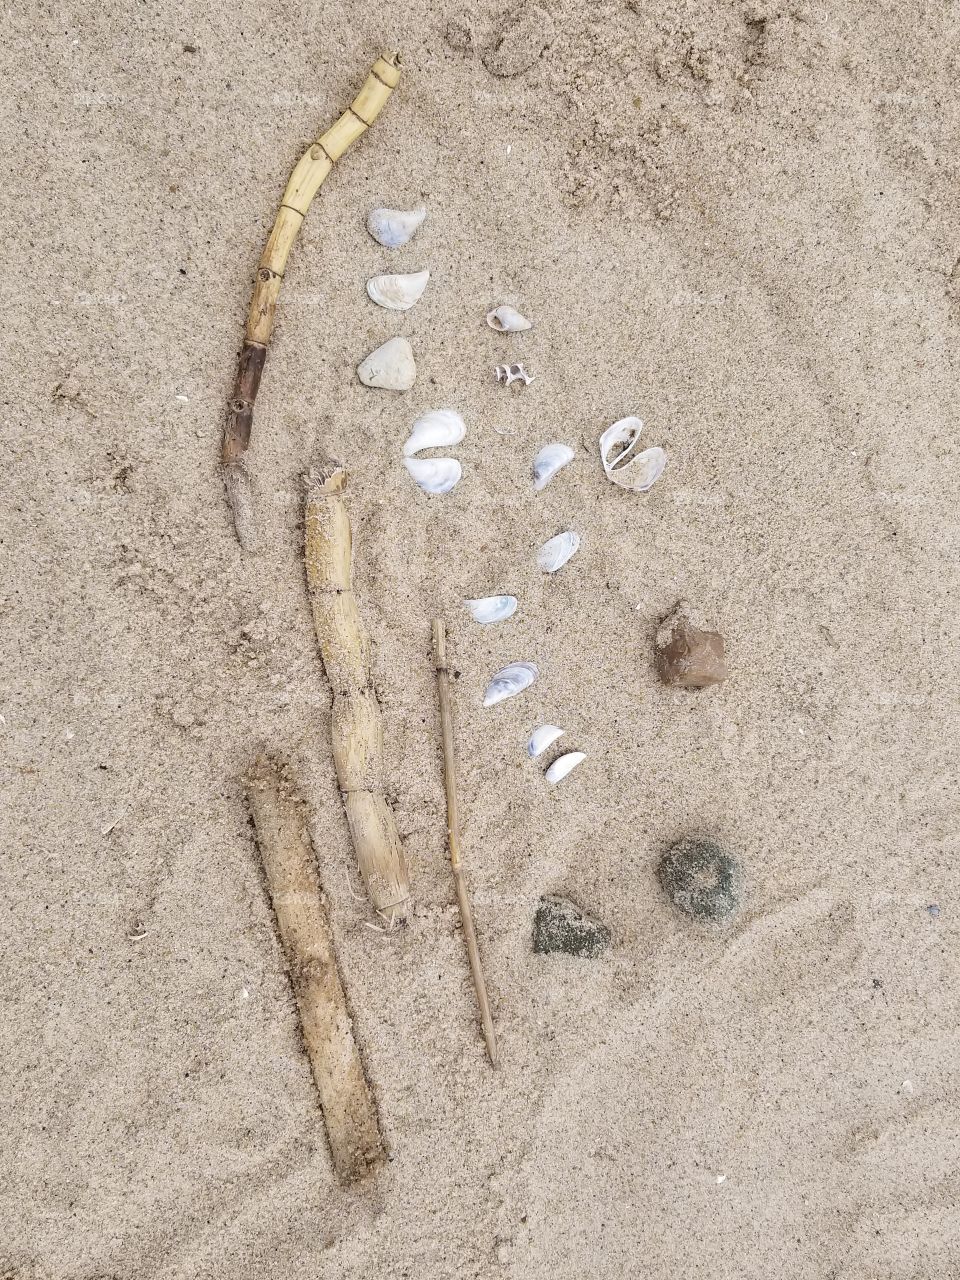 Beach finds